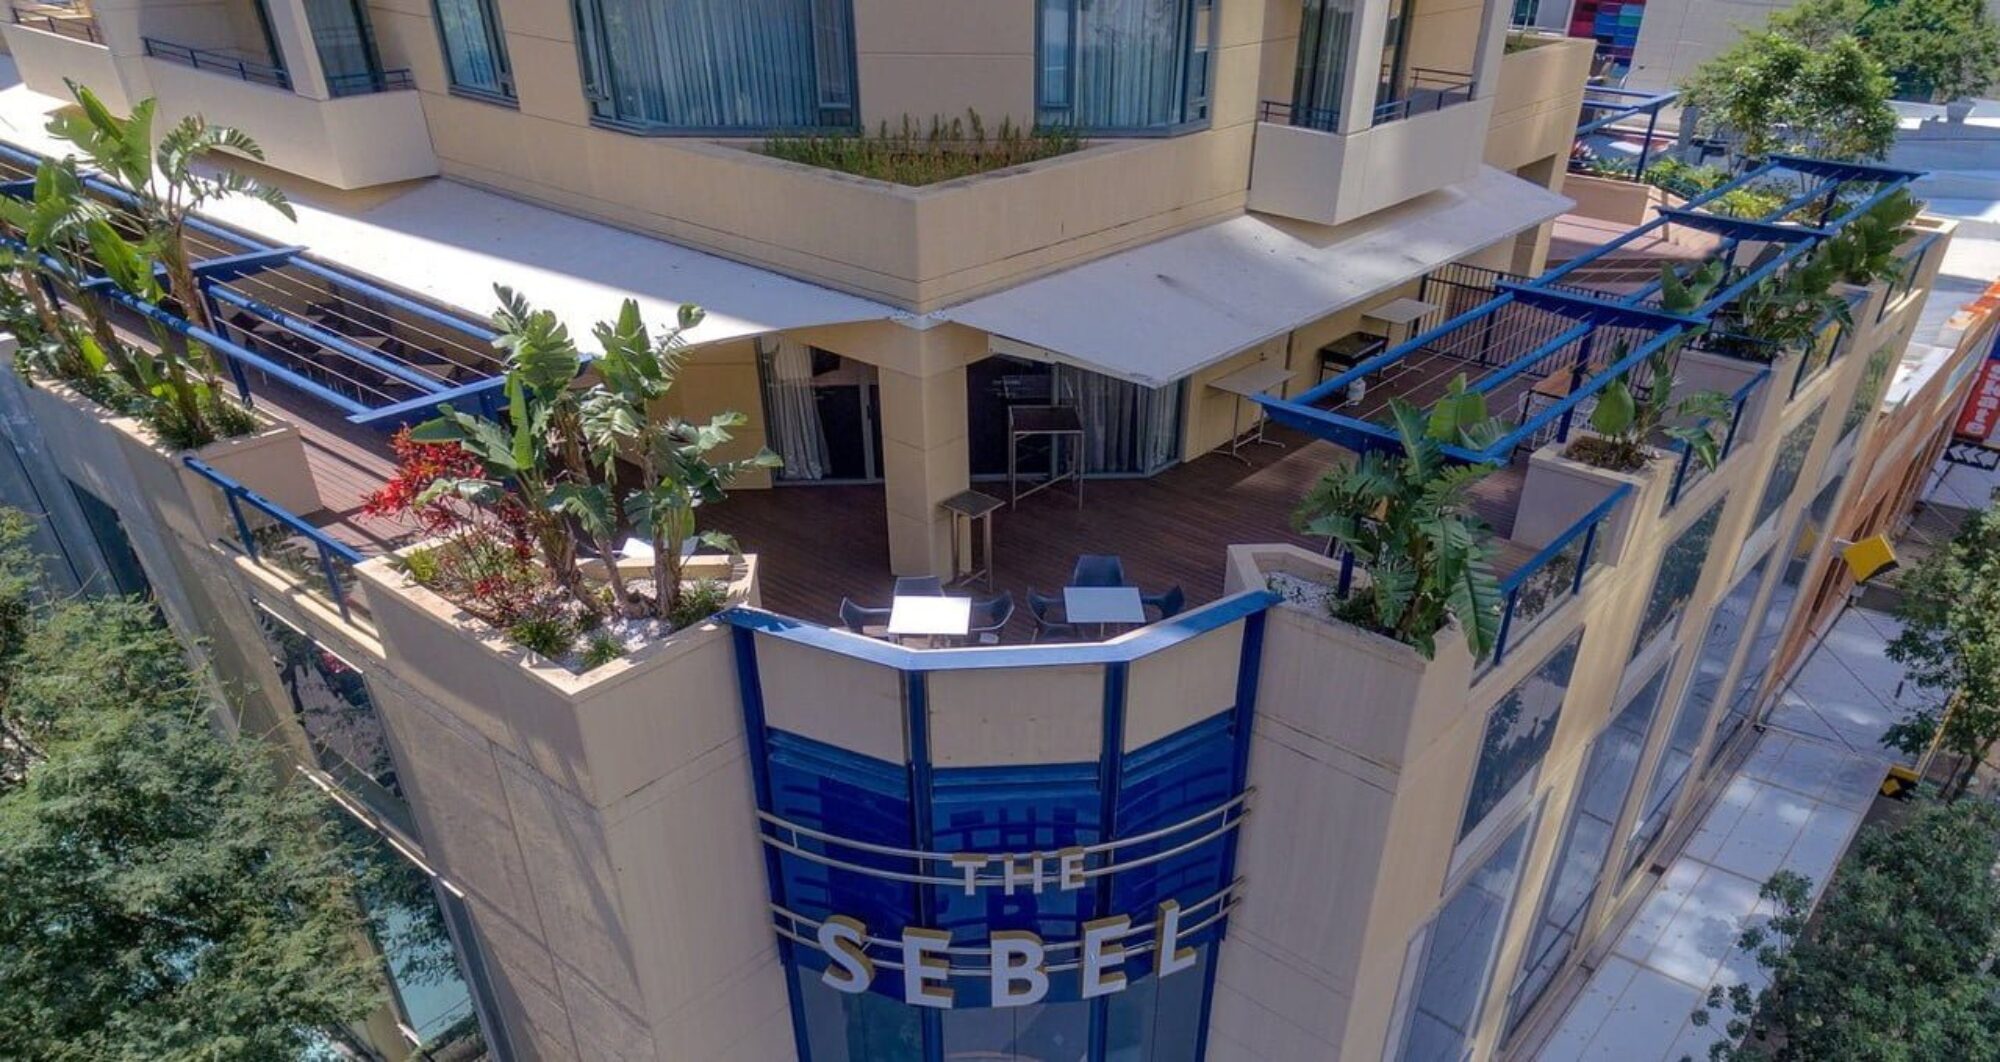 Commercial Decking – Sebel Hotel Brisbane Case Study